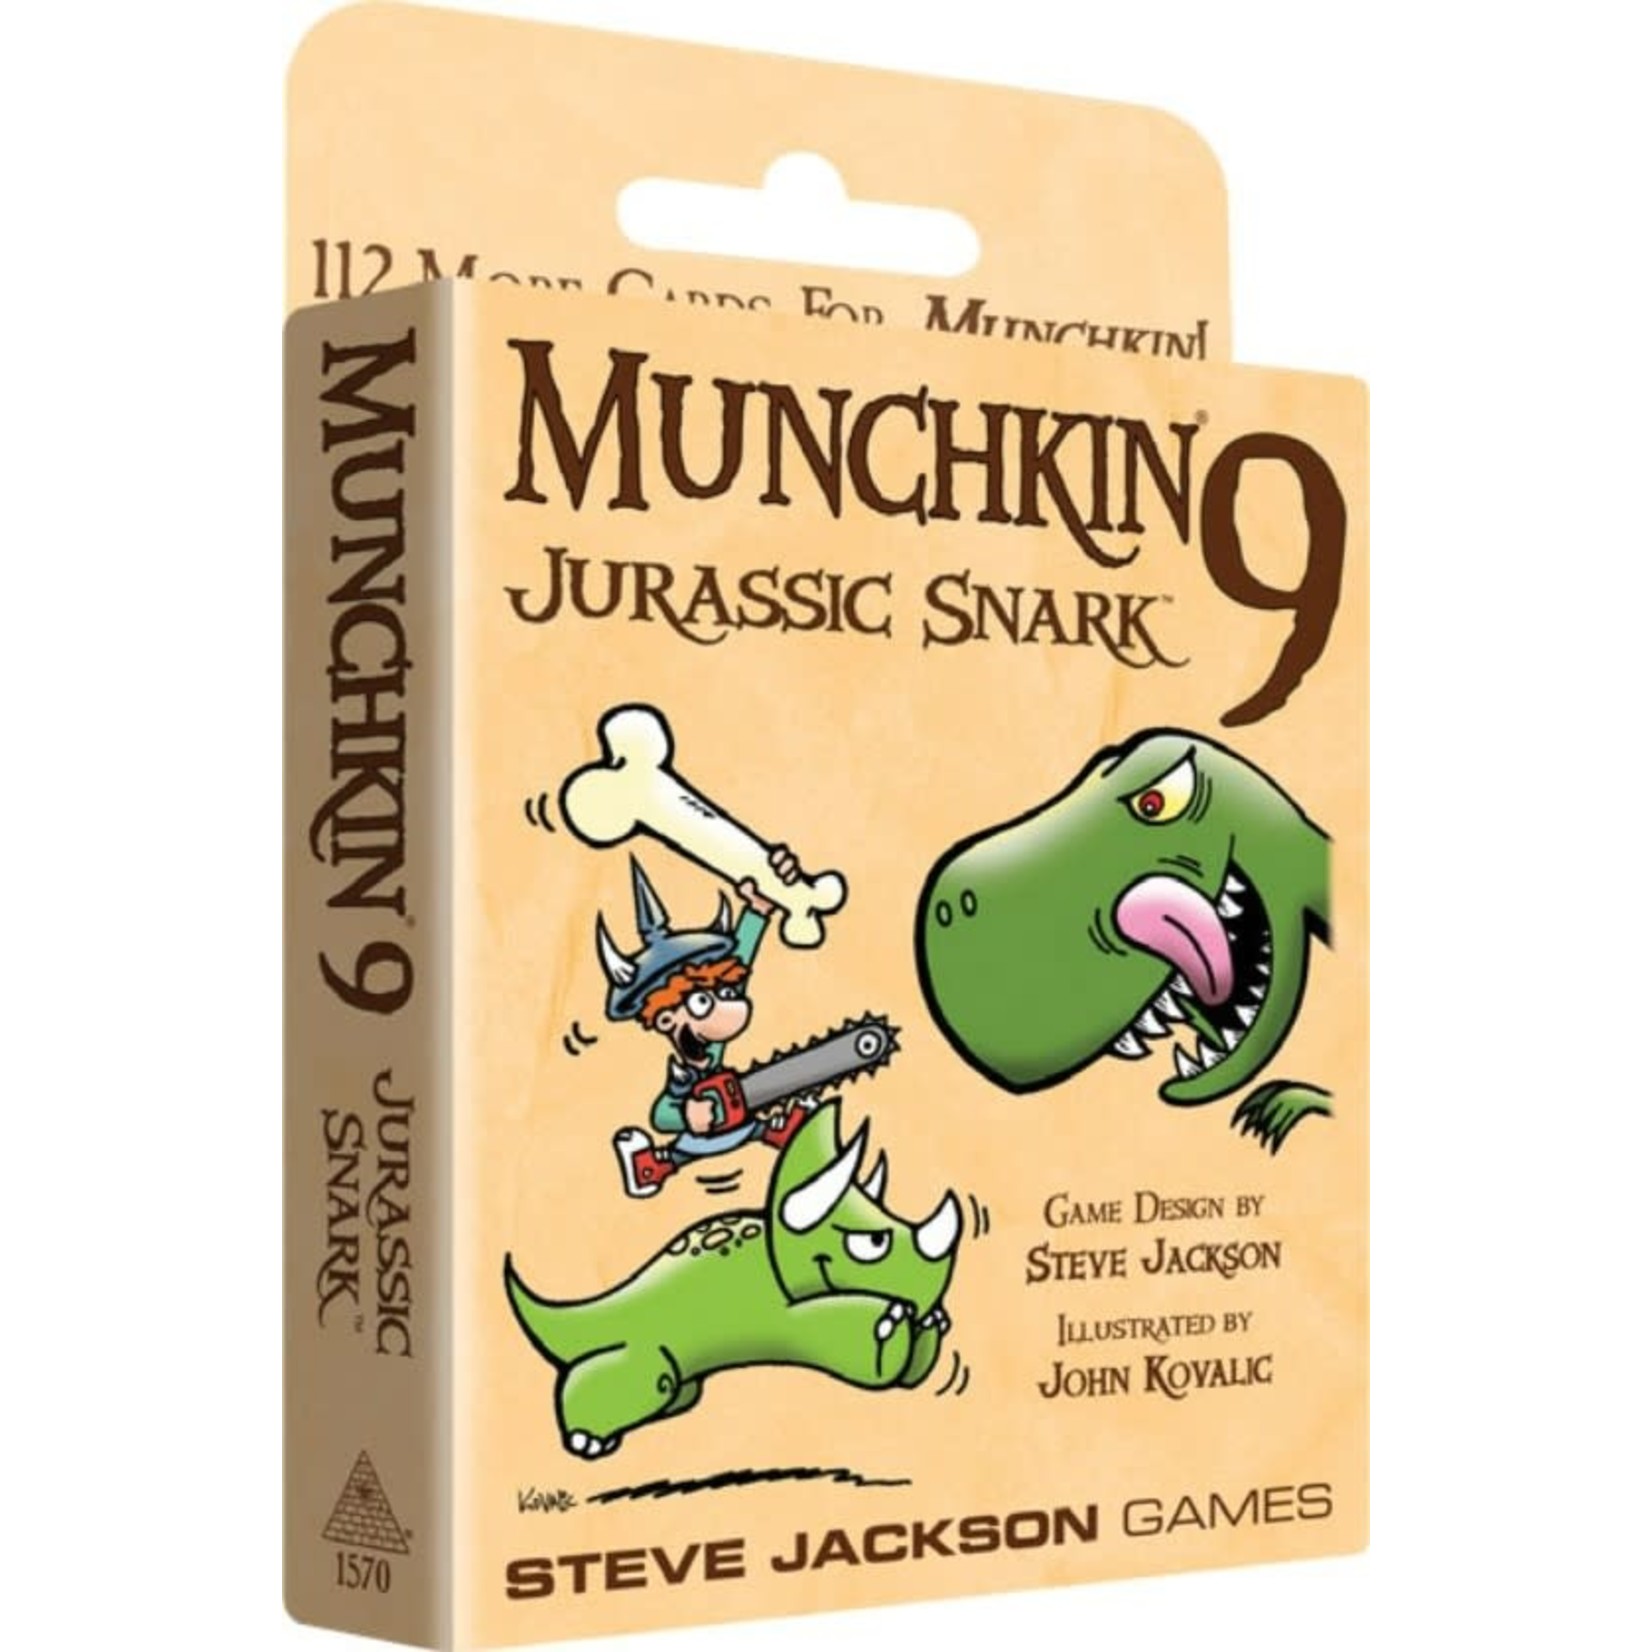 Steve Jackson Games Munchkin: Munchkin 9 - Jurassic Snark